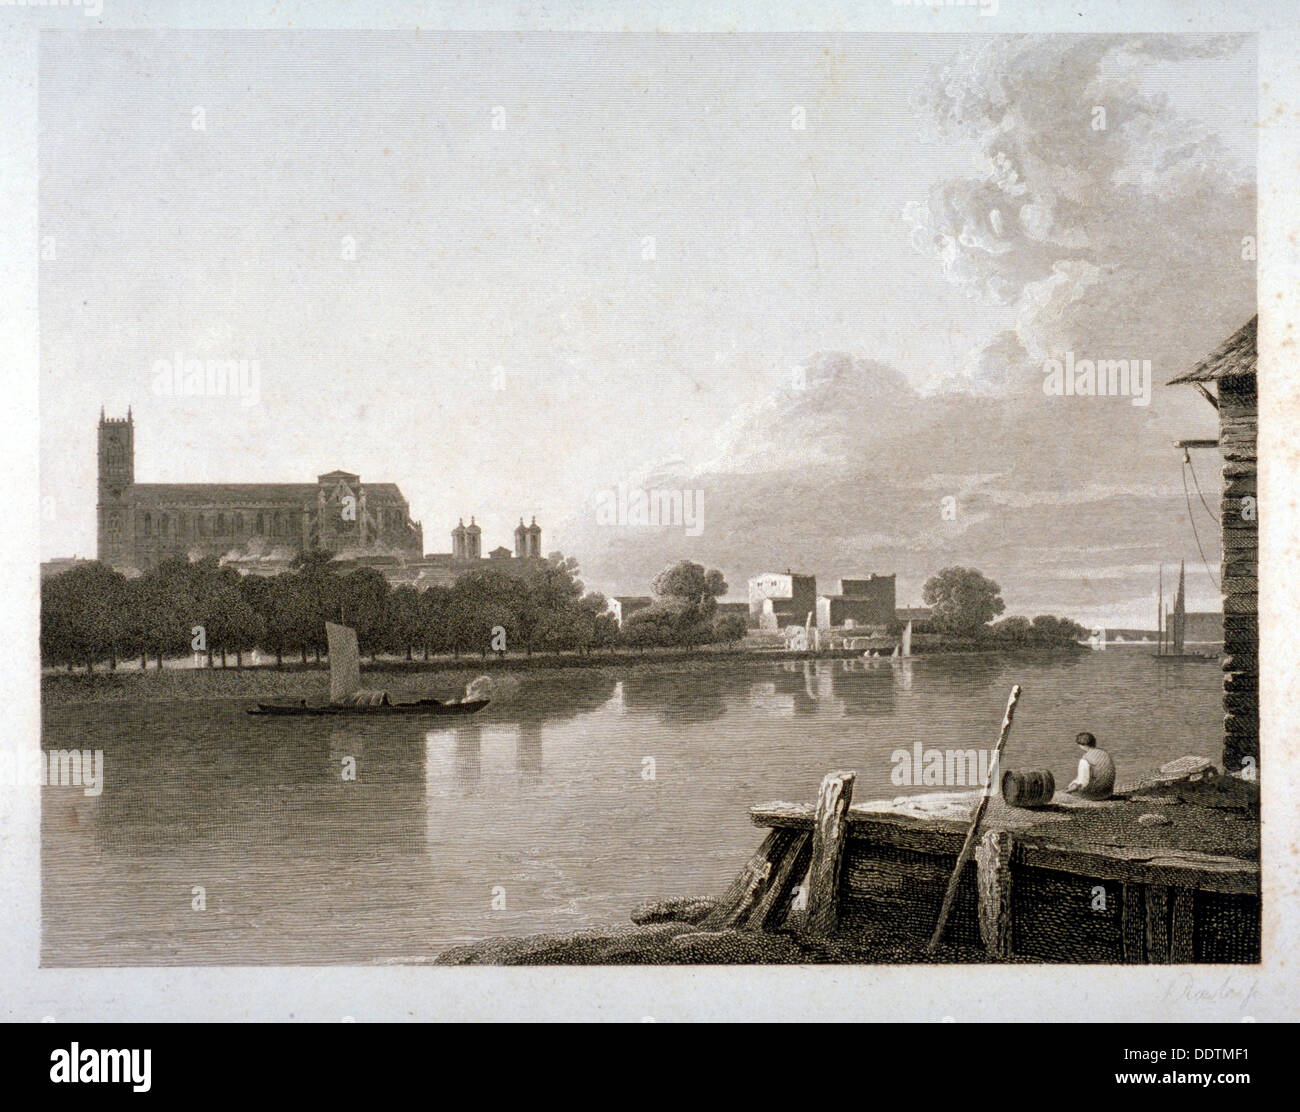 Abbazia di Westminster dal lato opposto del fiume Tamigi, Londra, c1800. Artista: Samuel Rawle Foto Stock